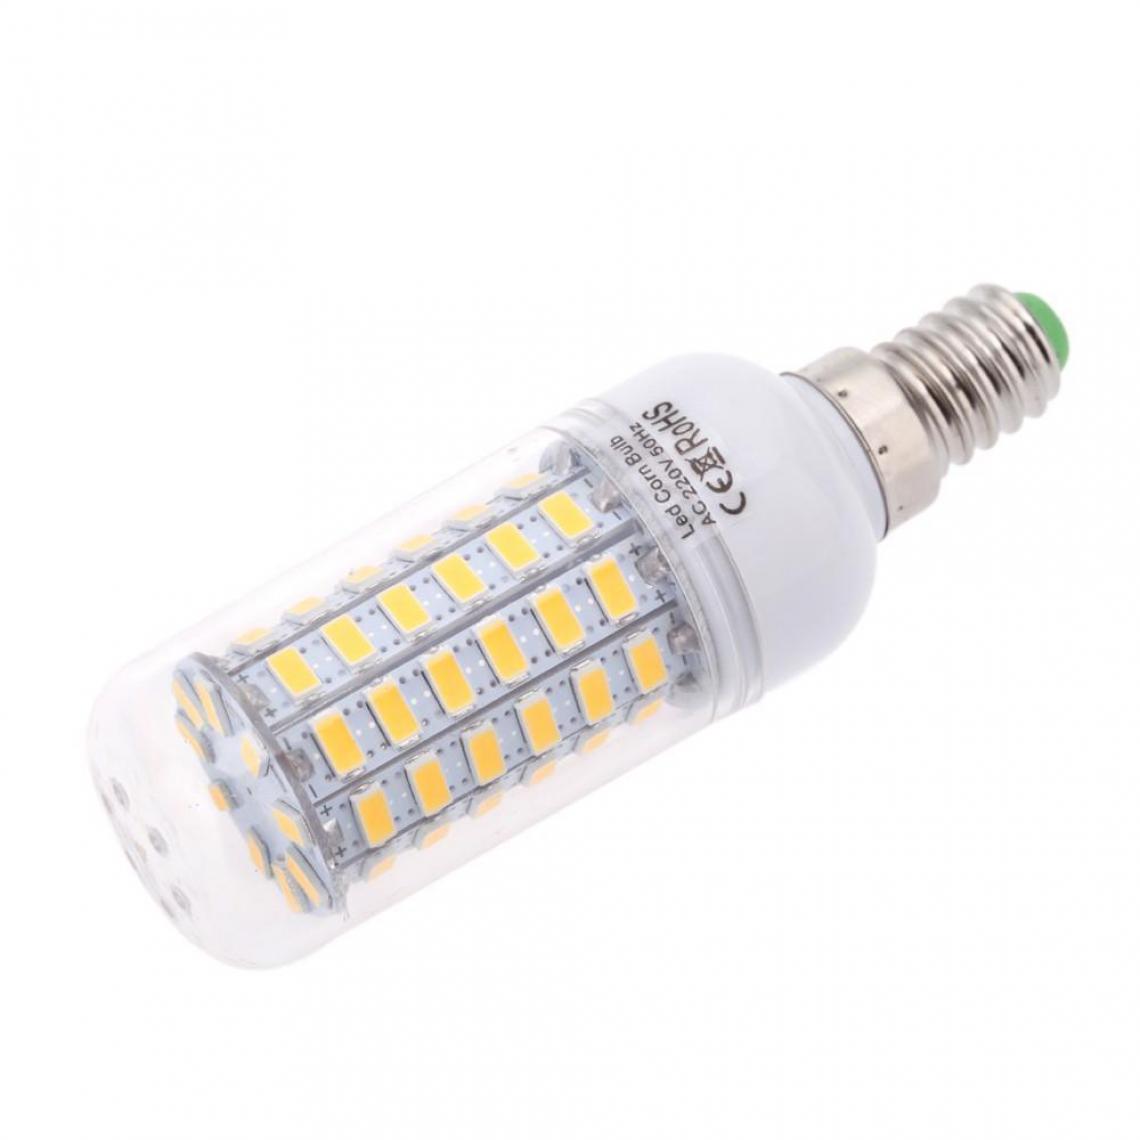 Justgreenbox - Ampoule de maïs à économie d'énergie 360 degrés 200-240V E14, Cold Blanc, 15W - Ampoules LED